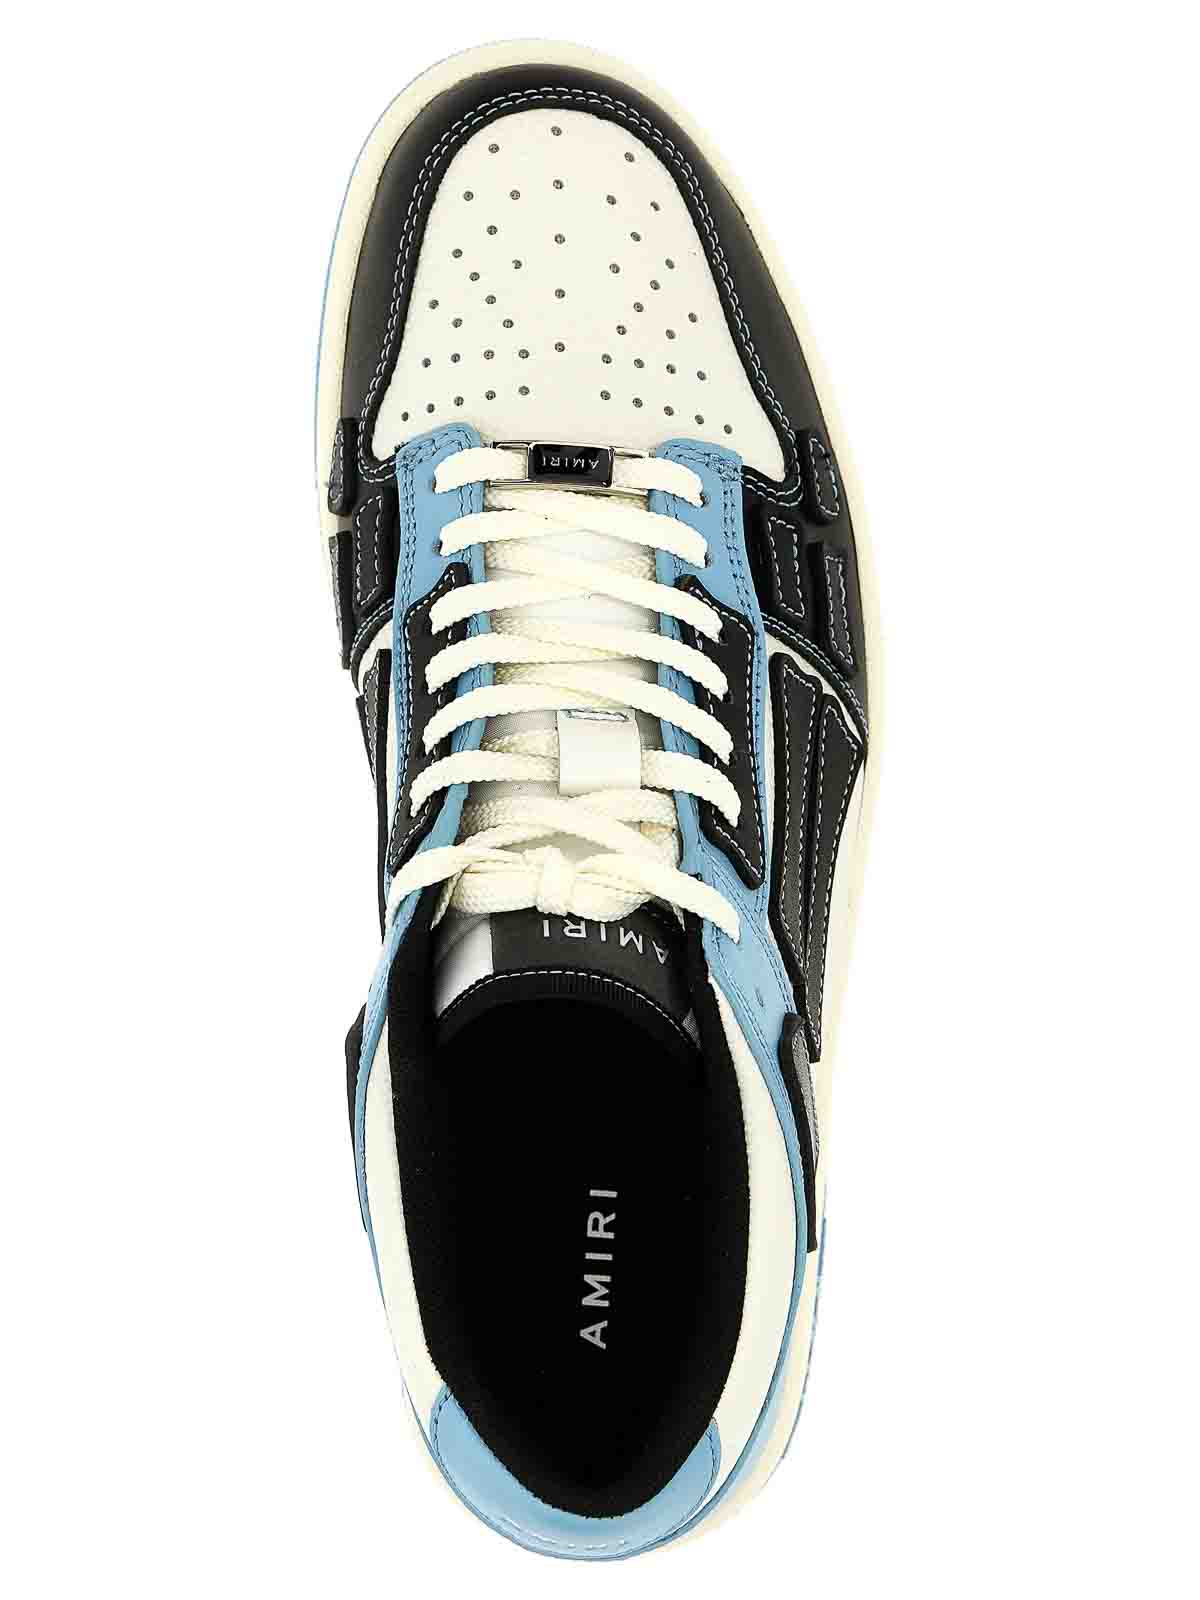 Shop Amiri Skel Sneakers In Light Blue